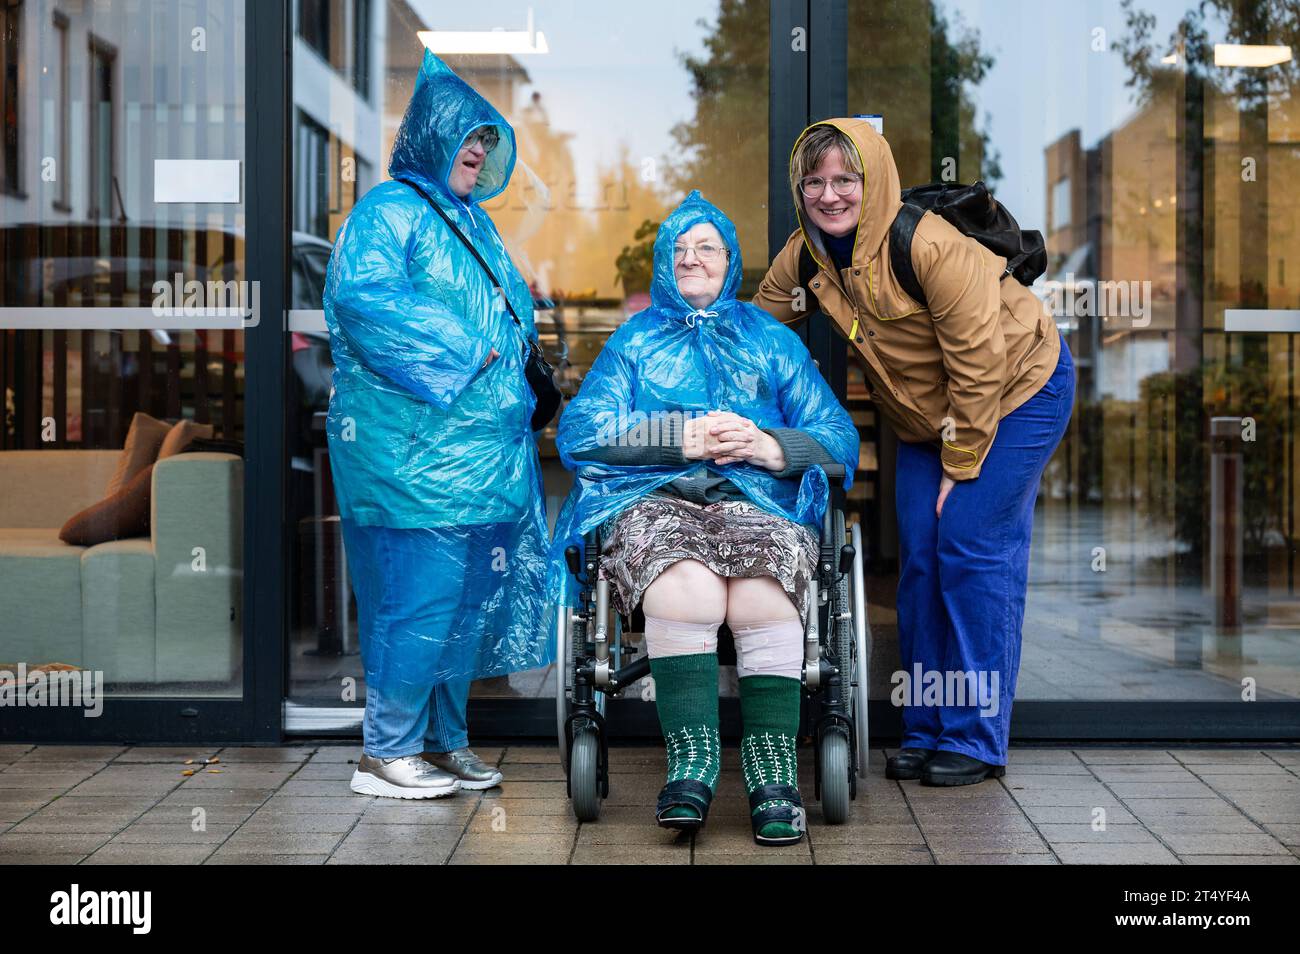 Ritratto di famiglia di una donna di 41 anni con sindrome di Down, una nonna su una sedia a rotelle e una donna di 37 anni che indossa abiti impermeabili, Tienen, Belgio credito: Imago/Alamy Live News Foto Stock